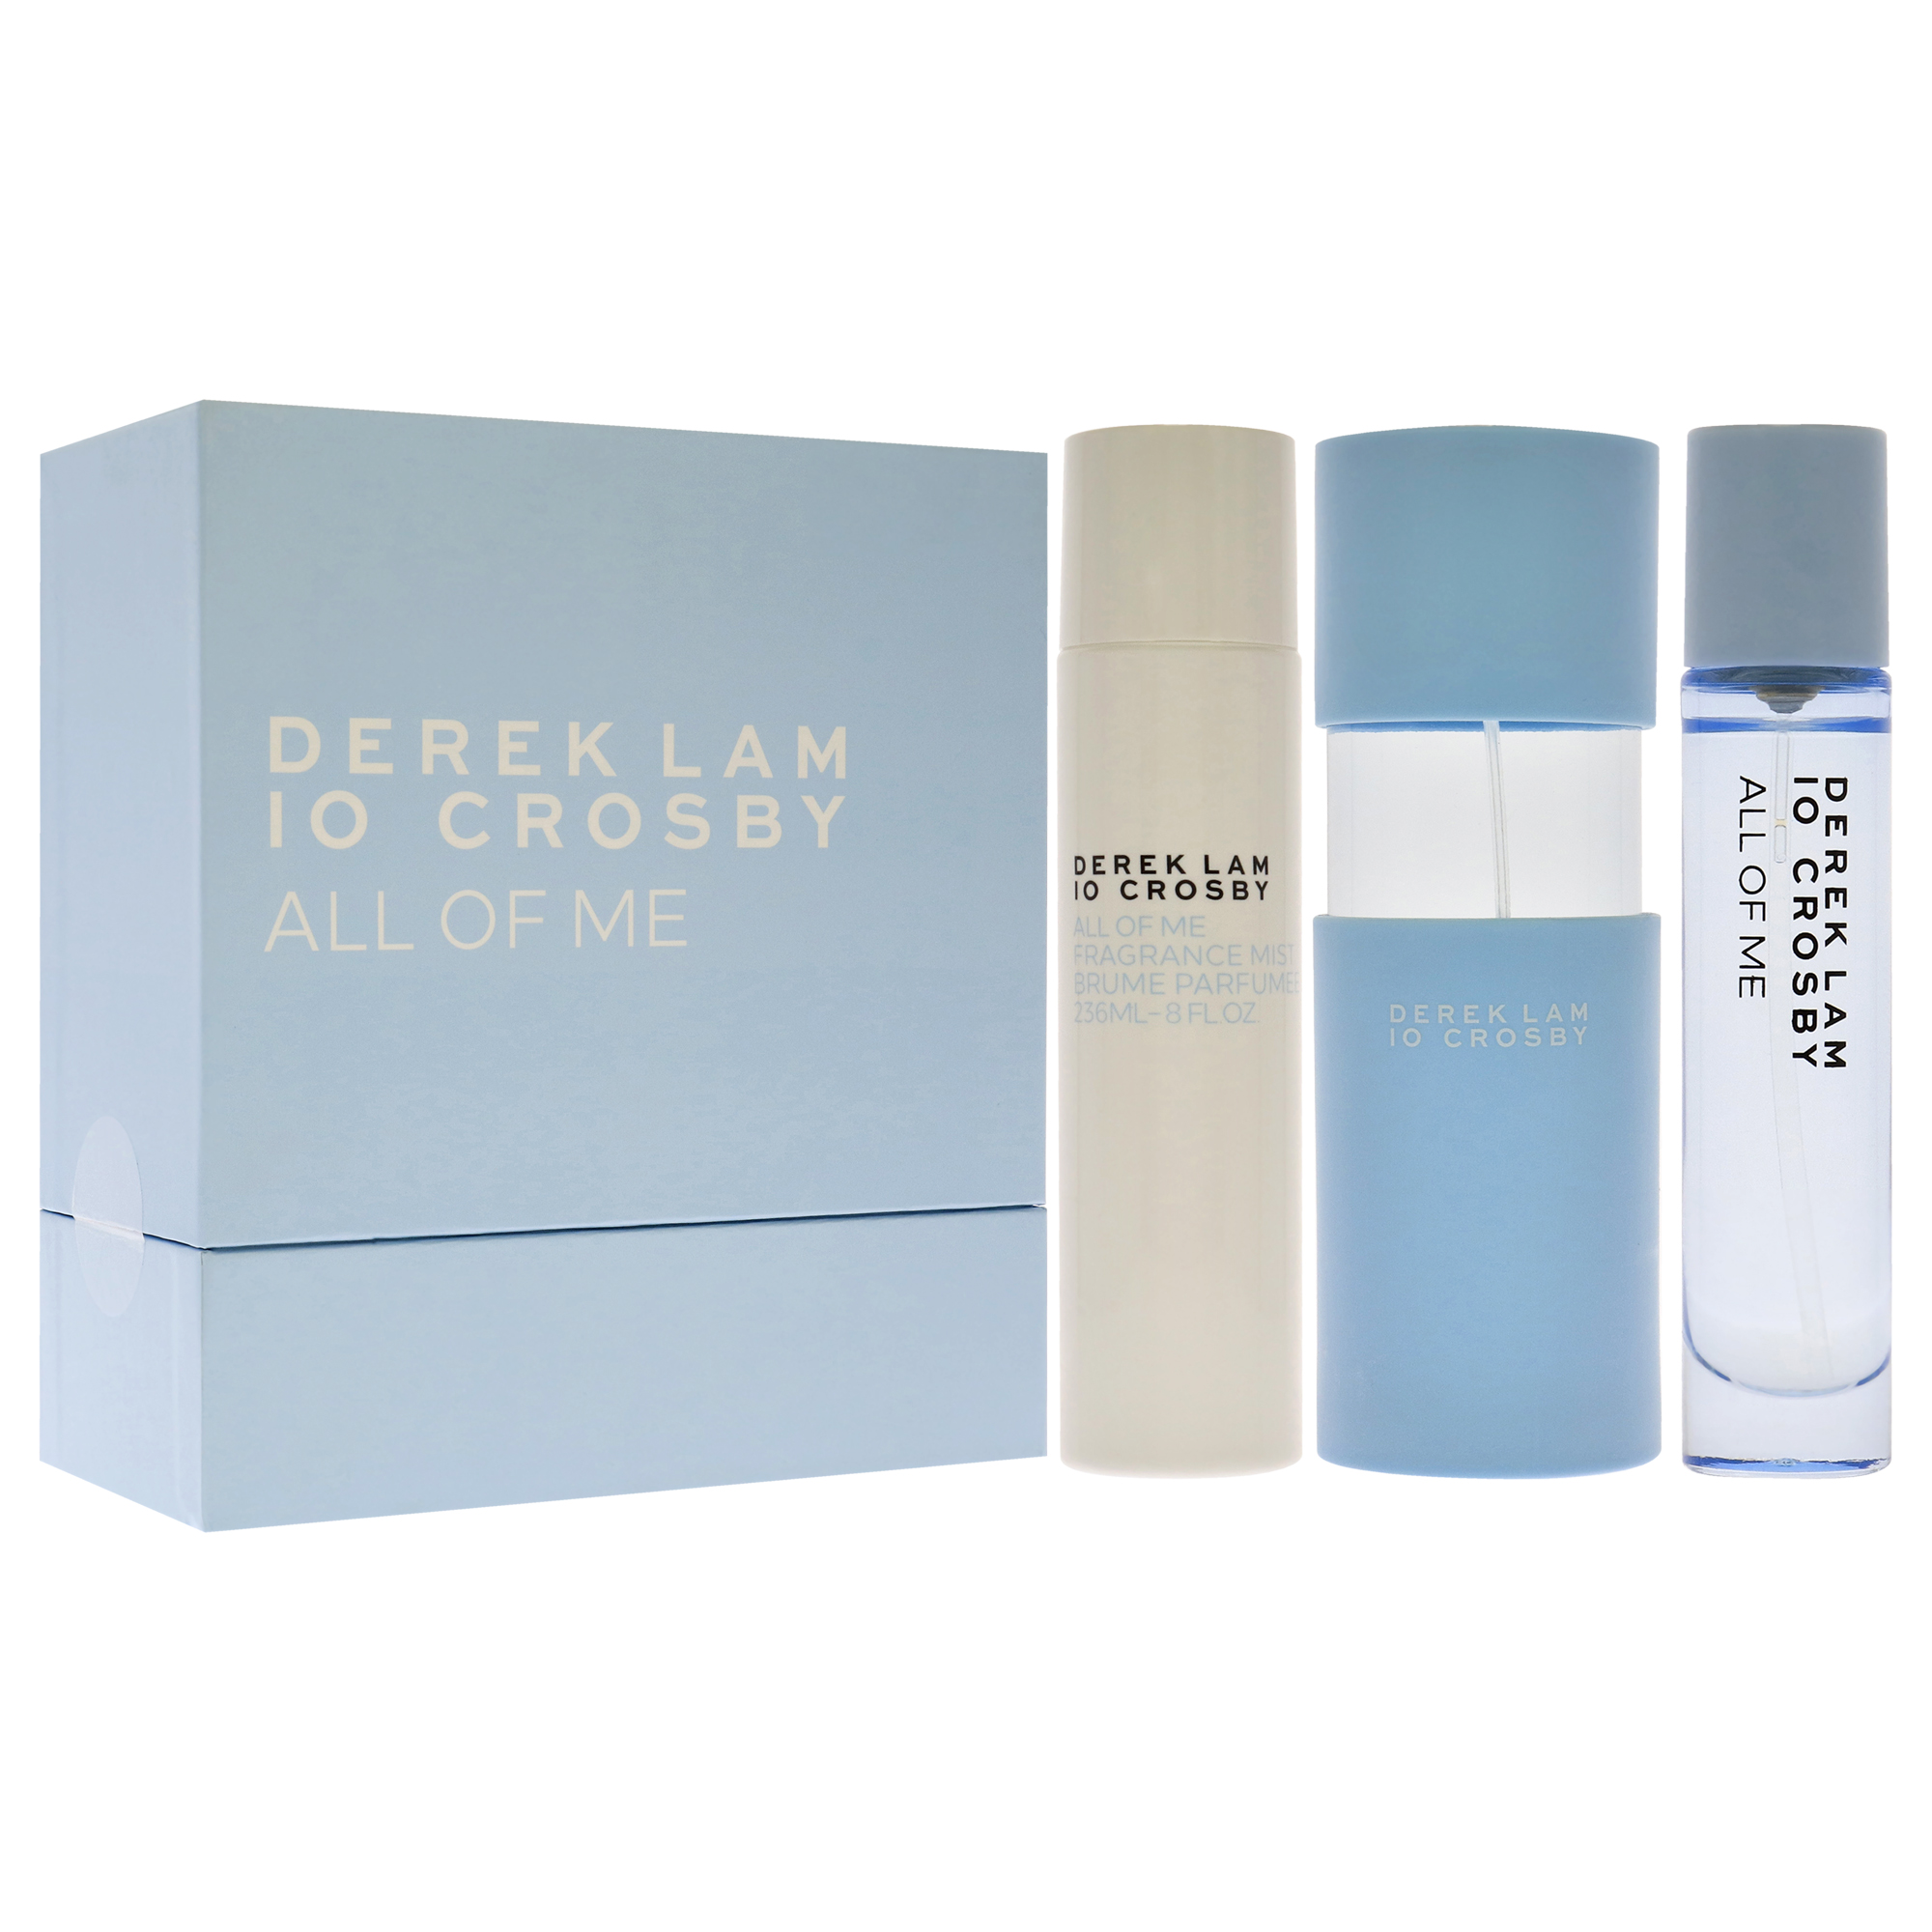 Derek Lam All of Me by Derek Lam for Women - 3.4oz EDP Spray, 10ml EDP Spray, 8oz Fragrance Mist